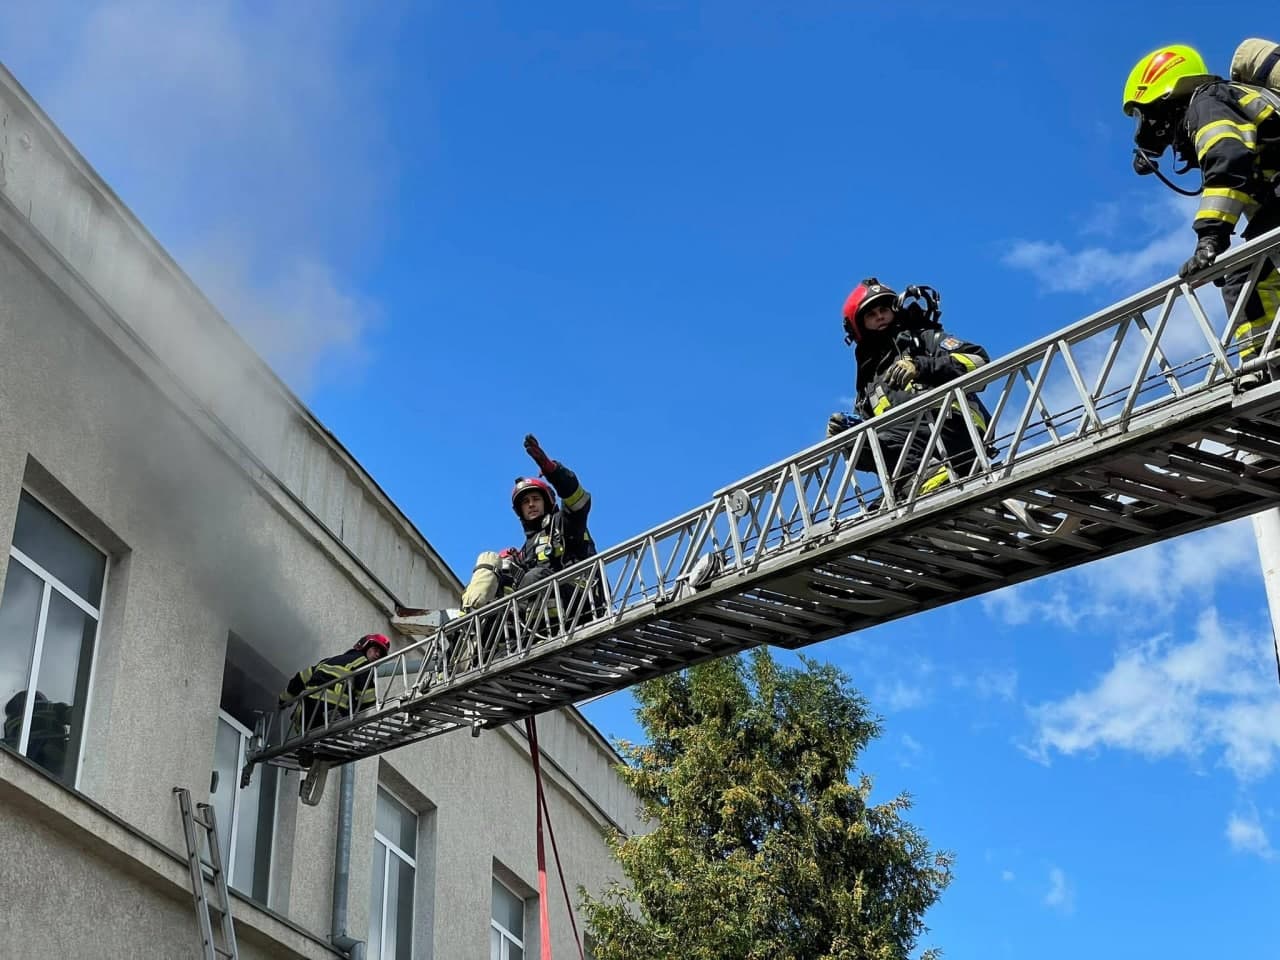 Incendiu la o fabrică de mobilă din capitală. Opt echipaje de pompieri au intervenit (FOTO)